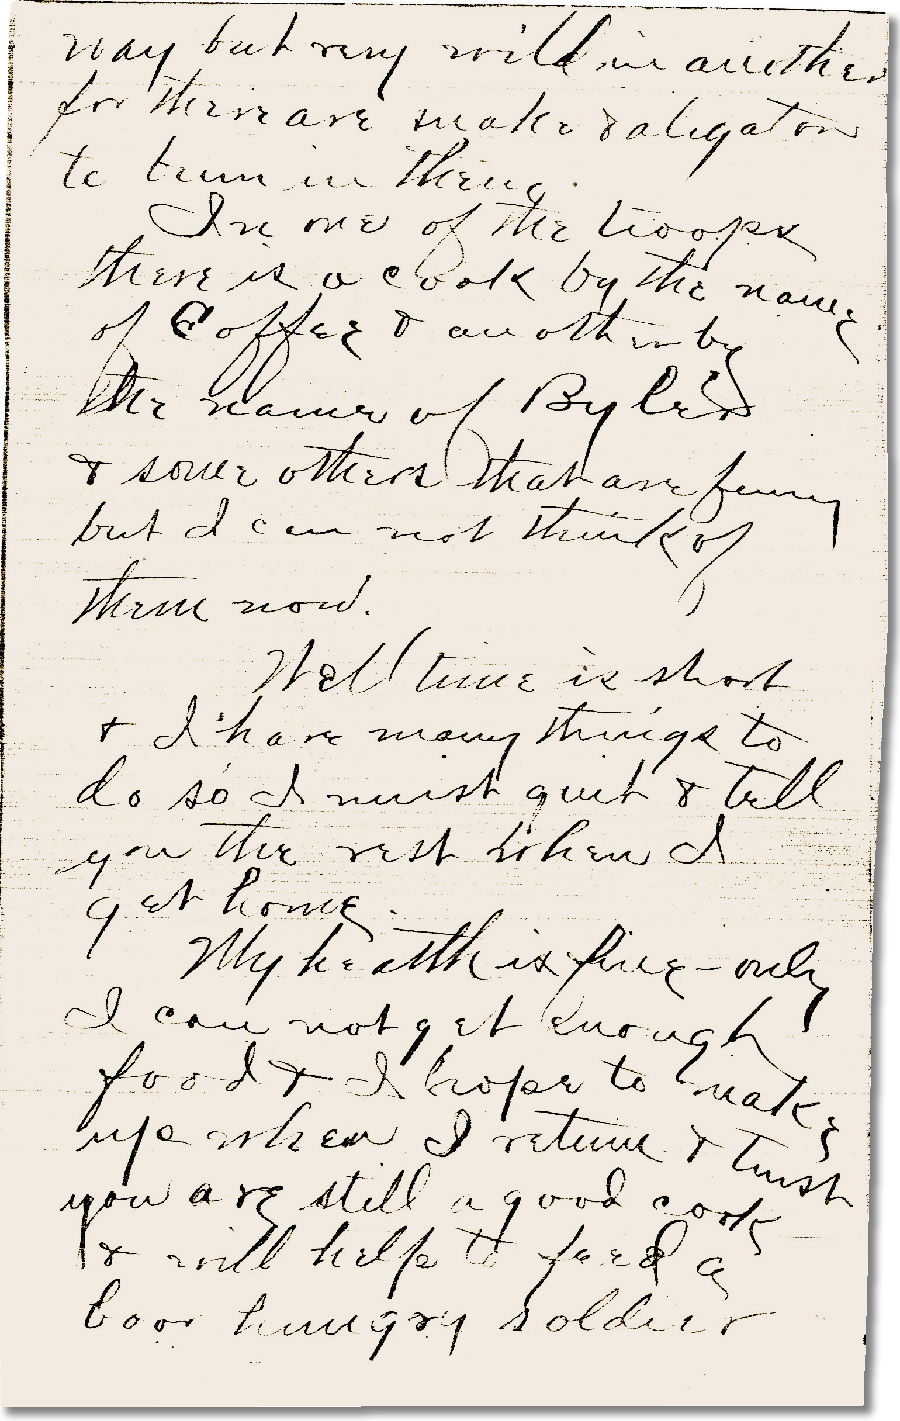 Arthur's letter August 18, 1898 page 2